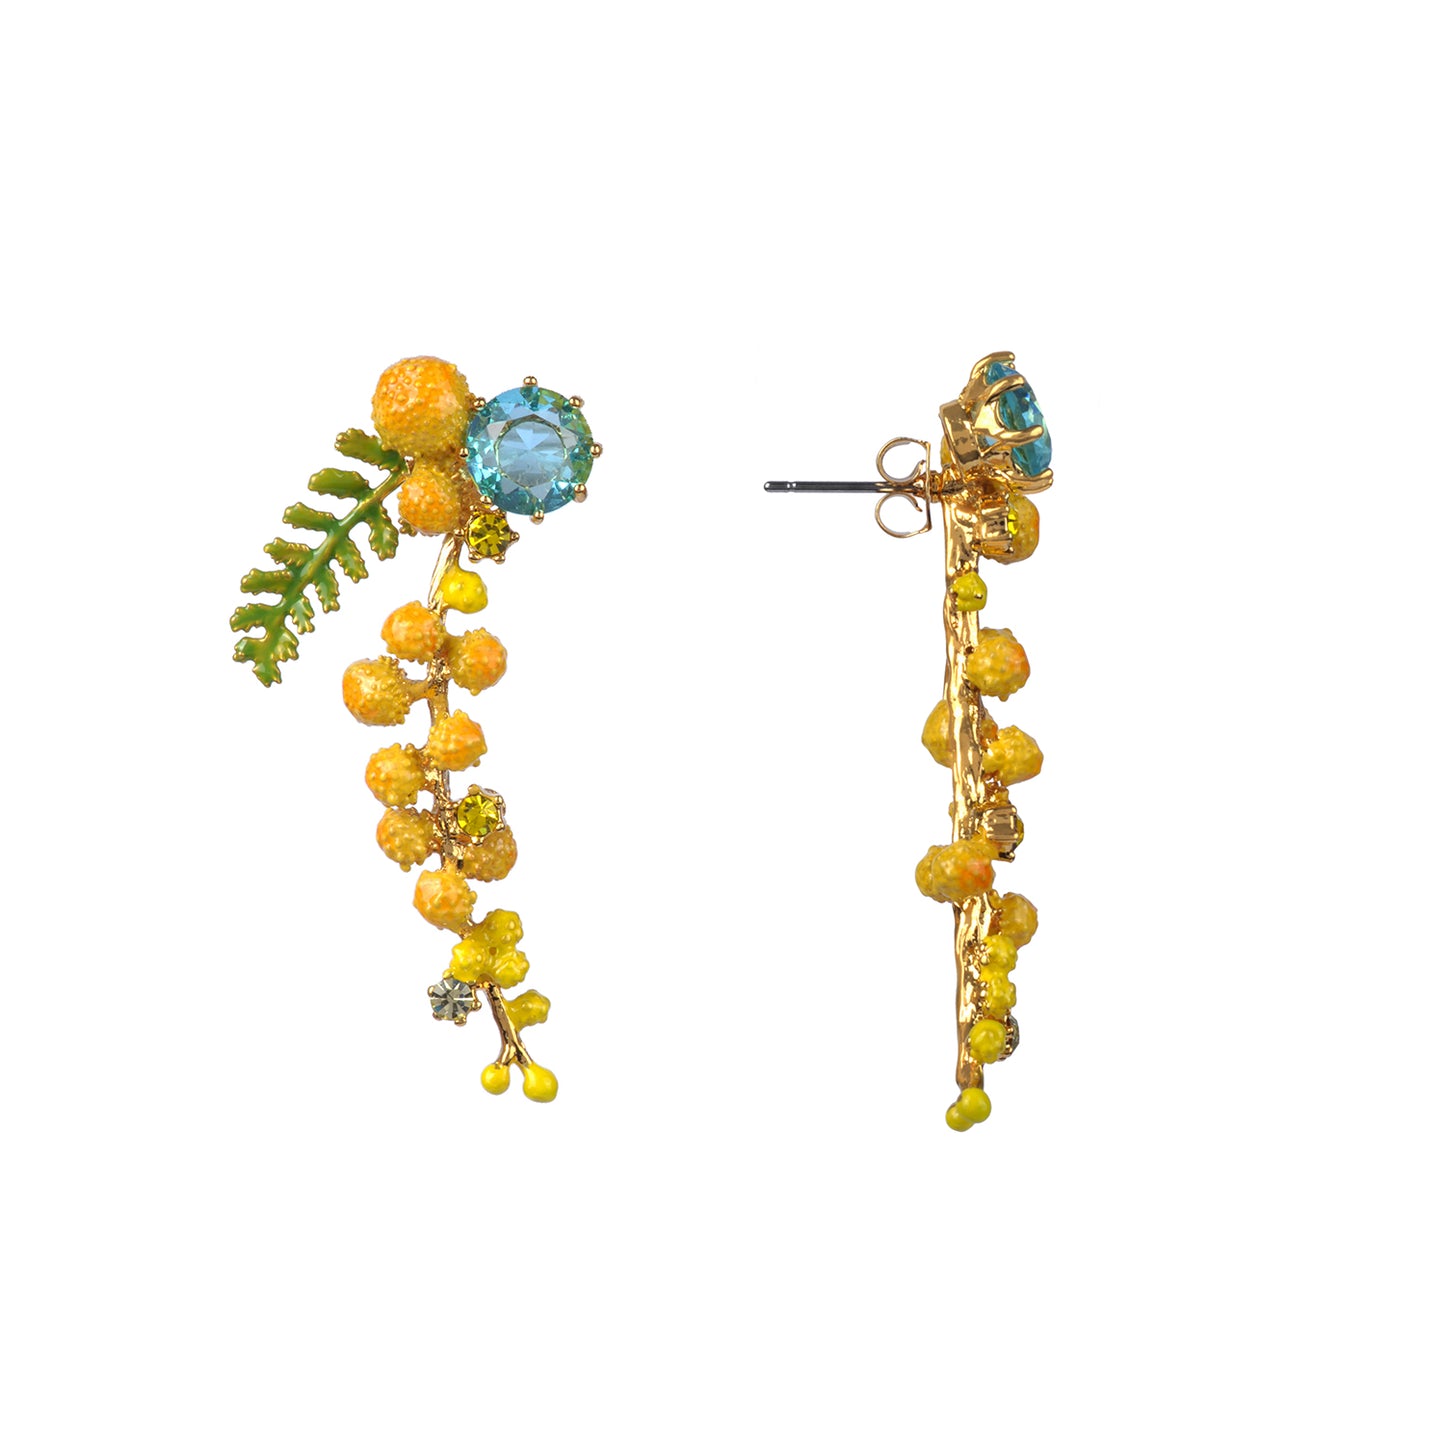 Mimosa Branch And Fern Tud Earrings | ABJP104/1